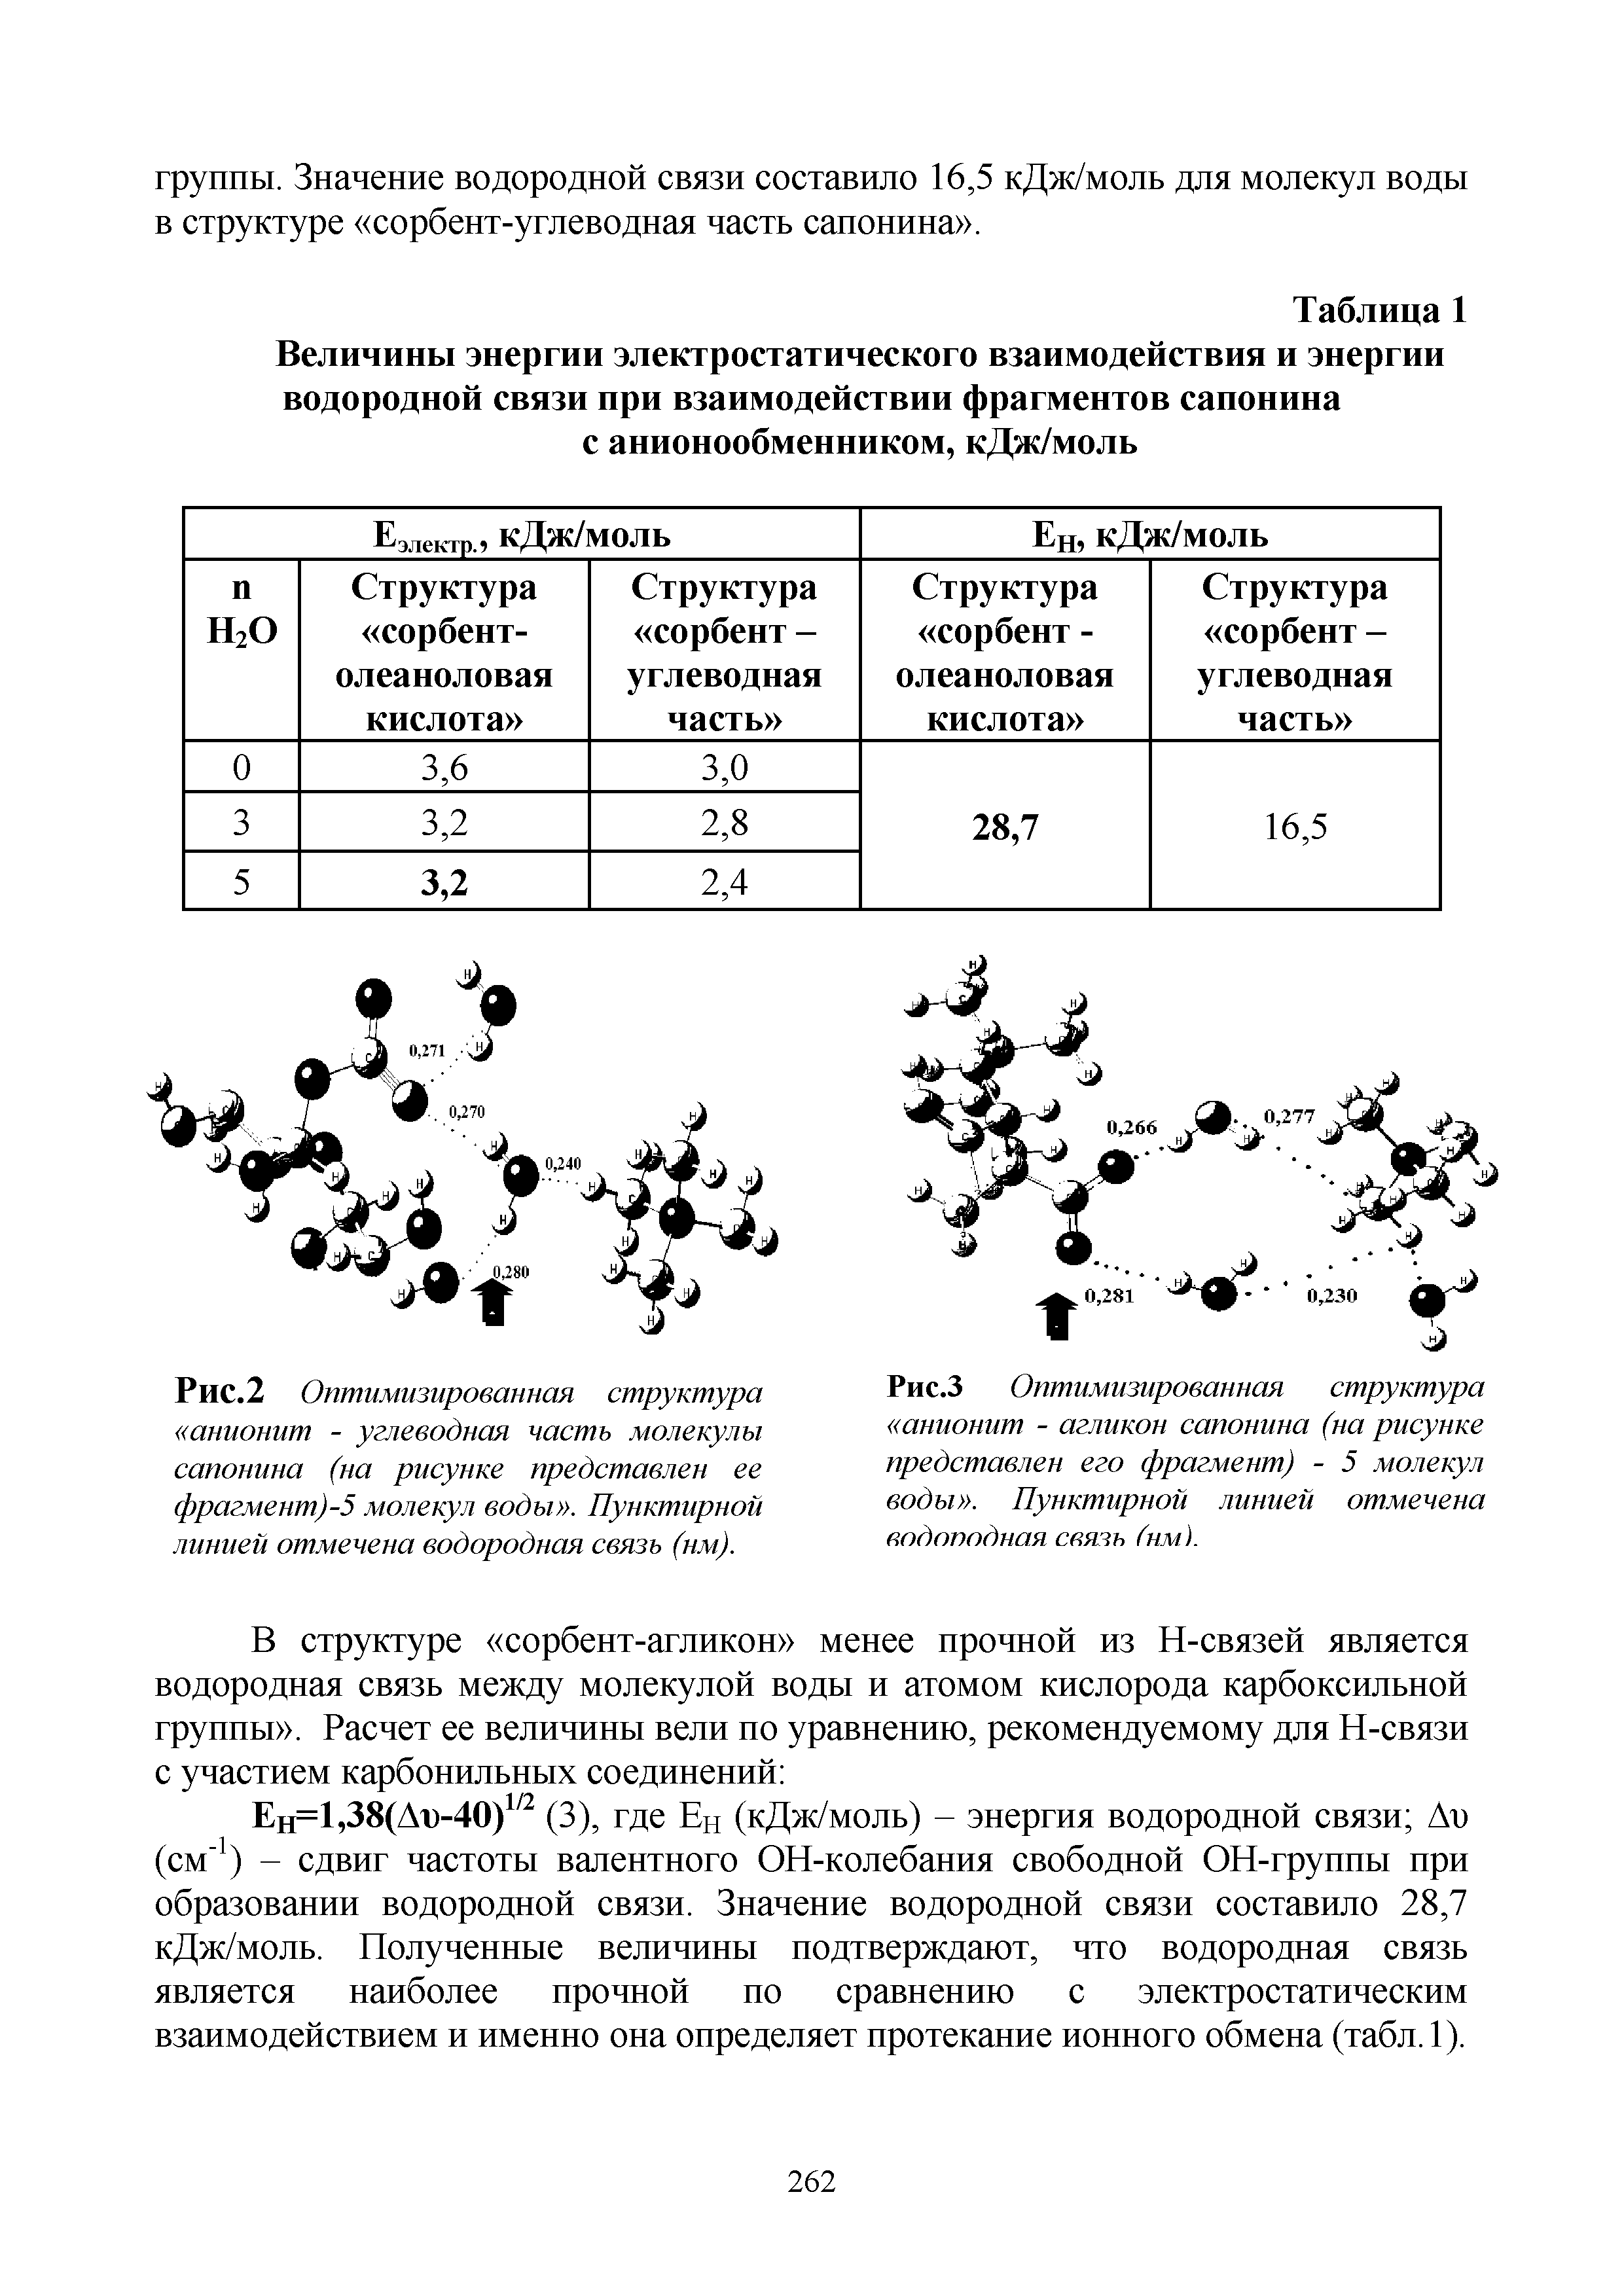 Таблица 1 Величины энергии электростатического взаимодействия и энергии водородной связи при взаимодействии фрагментов сапонина с анионообменником, кДж/моль...